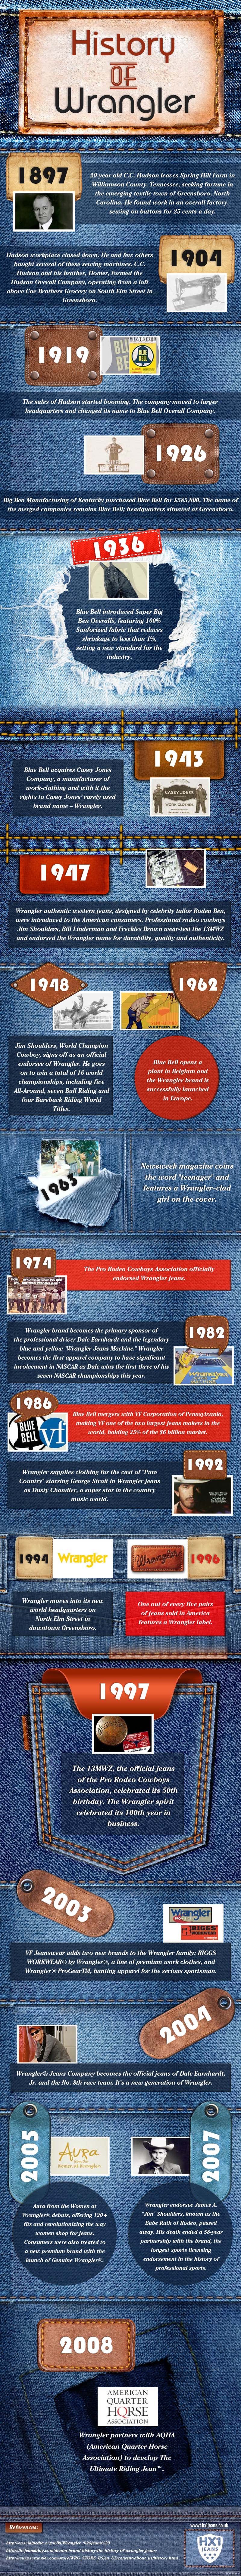 History of Wrangler